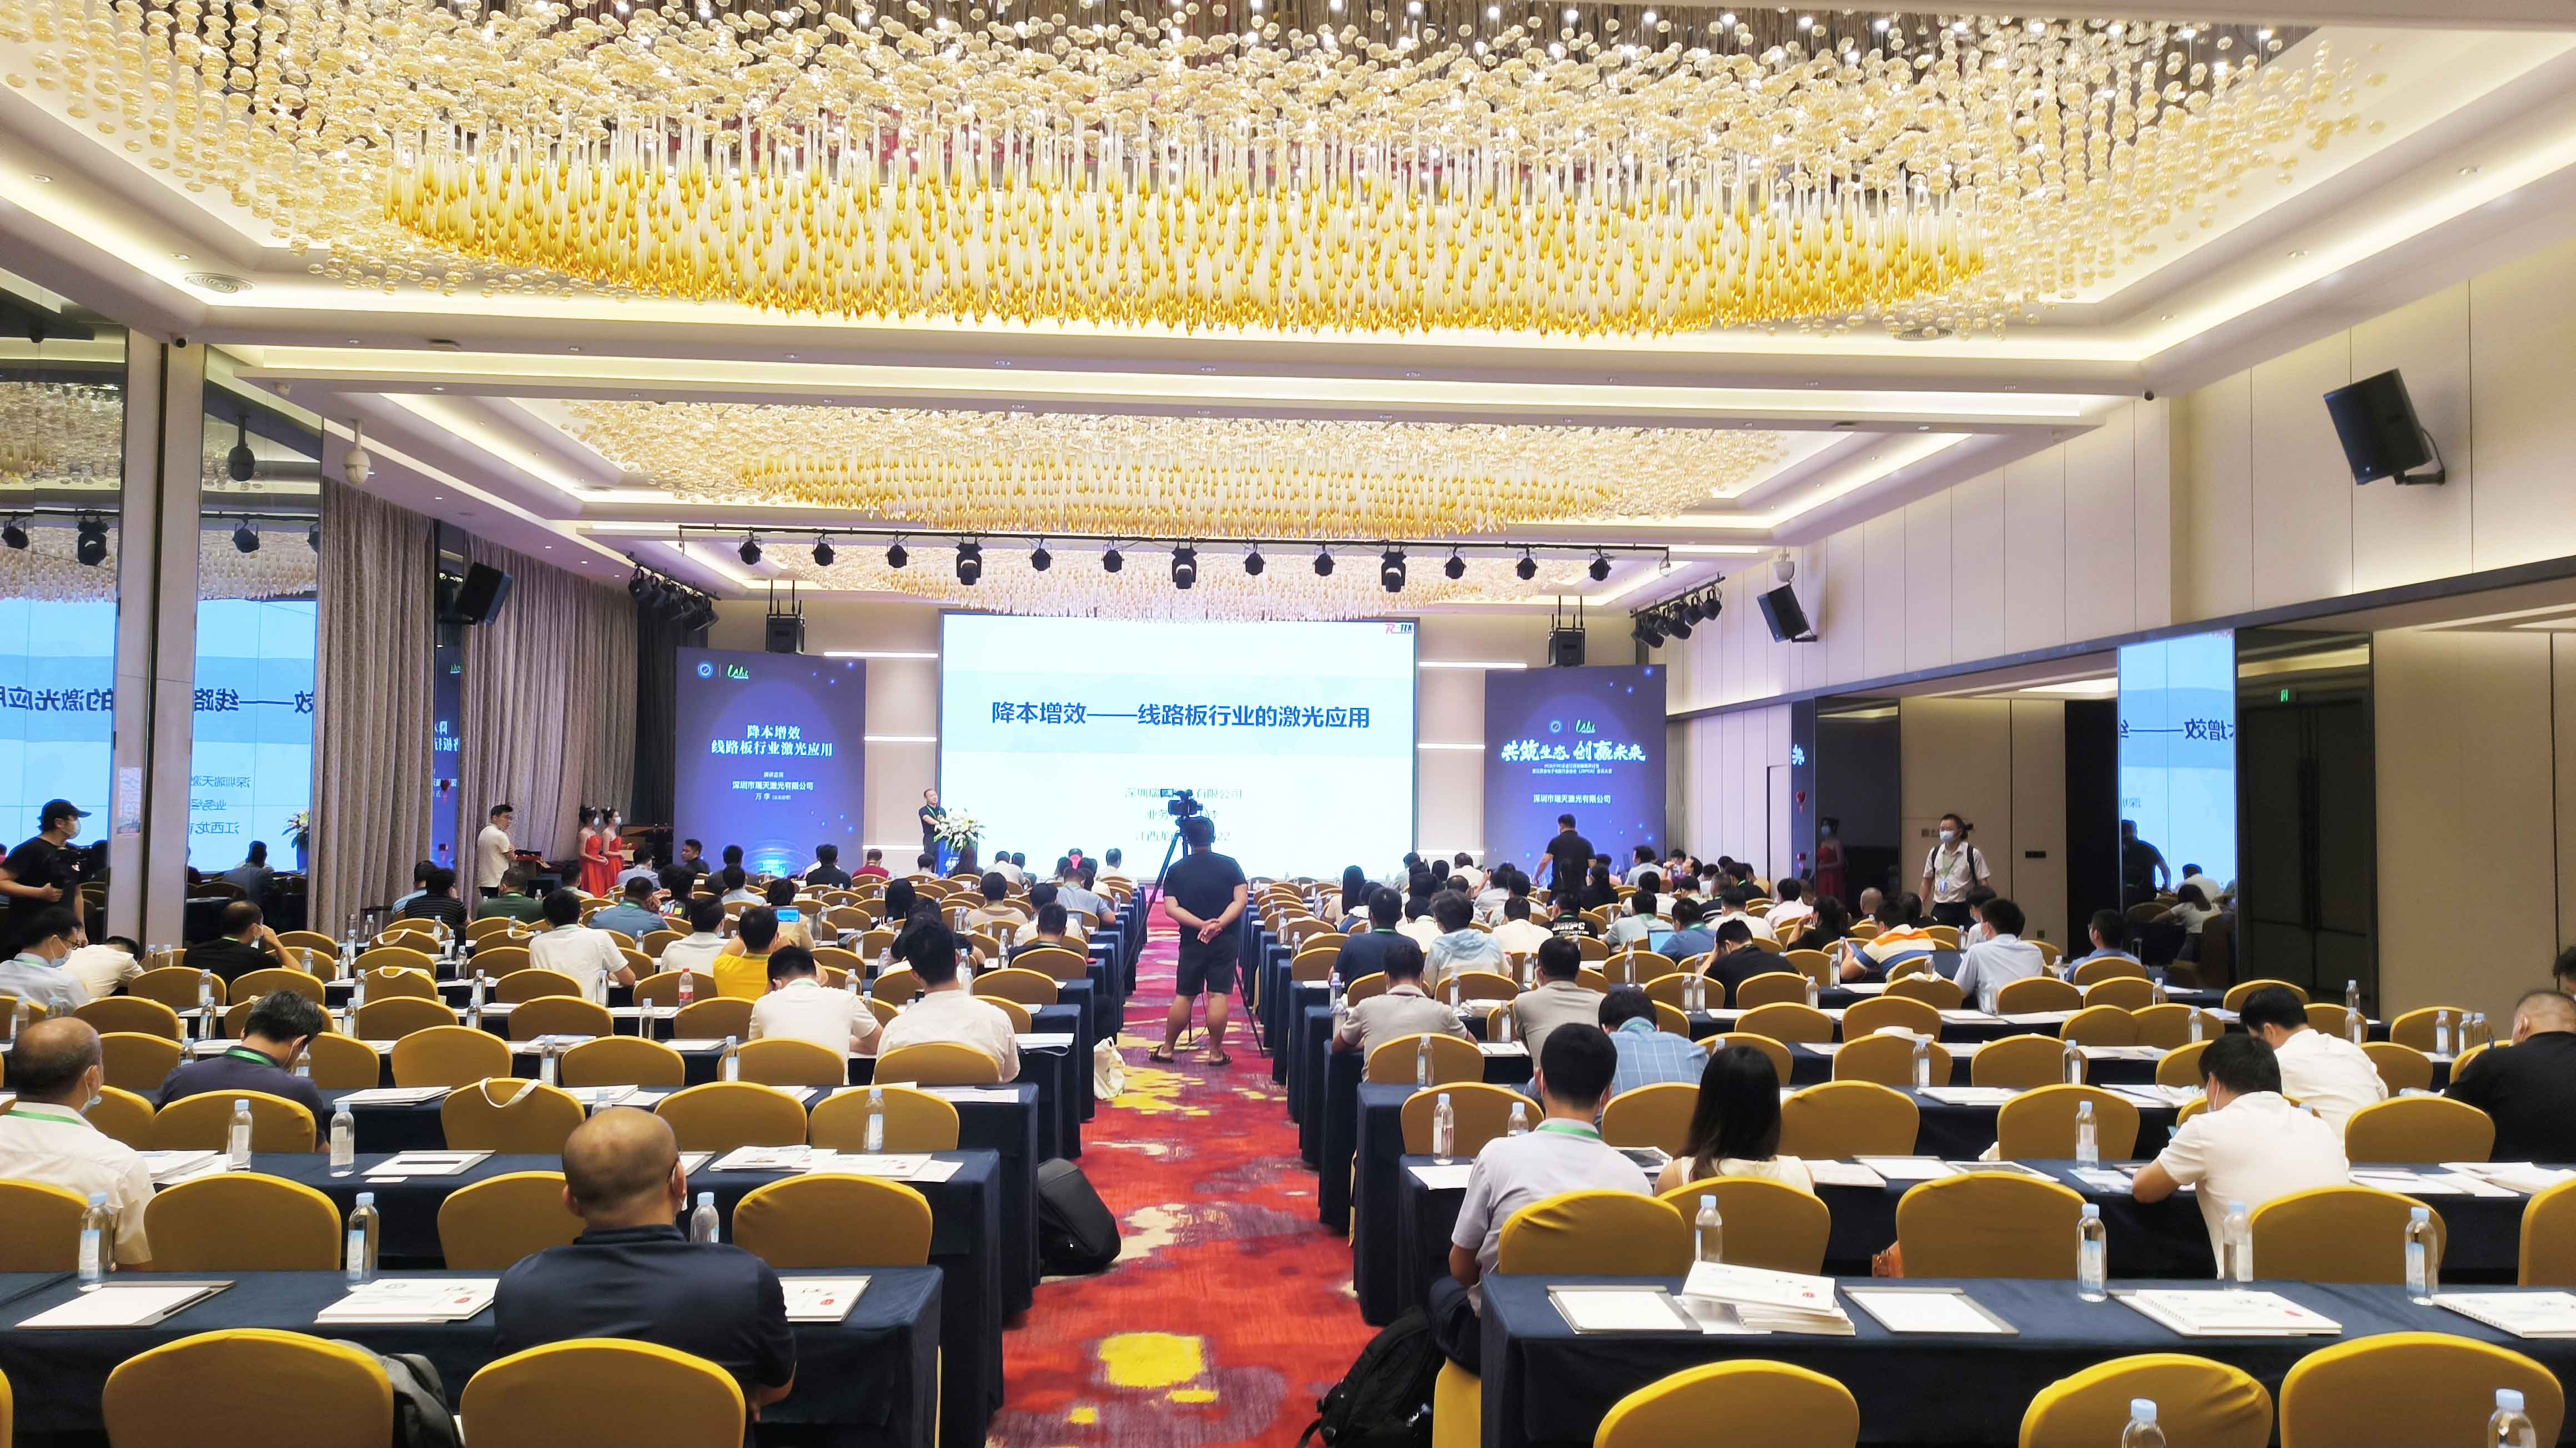 El seminario de PCB/FPC Enterprise Jiangxi Innovation Road y la reunión de membresía de la Asociación de la Industria del Circuito Electrónico de Jiangxi (JXPCA) en la que participó el TEK derecho llegó a una conclusio exitosa